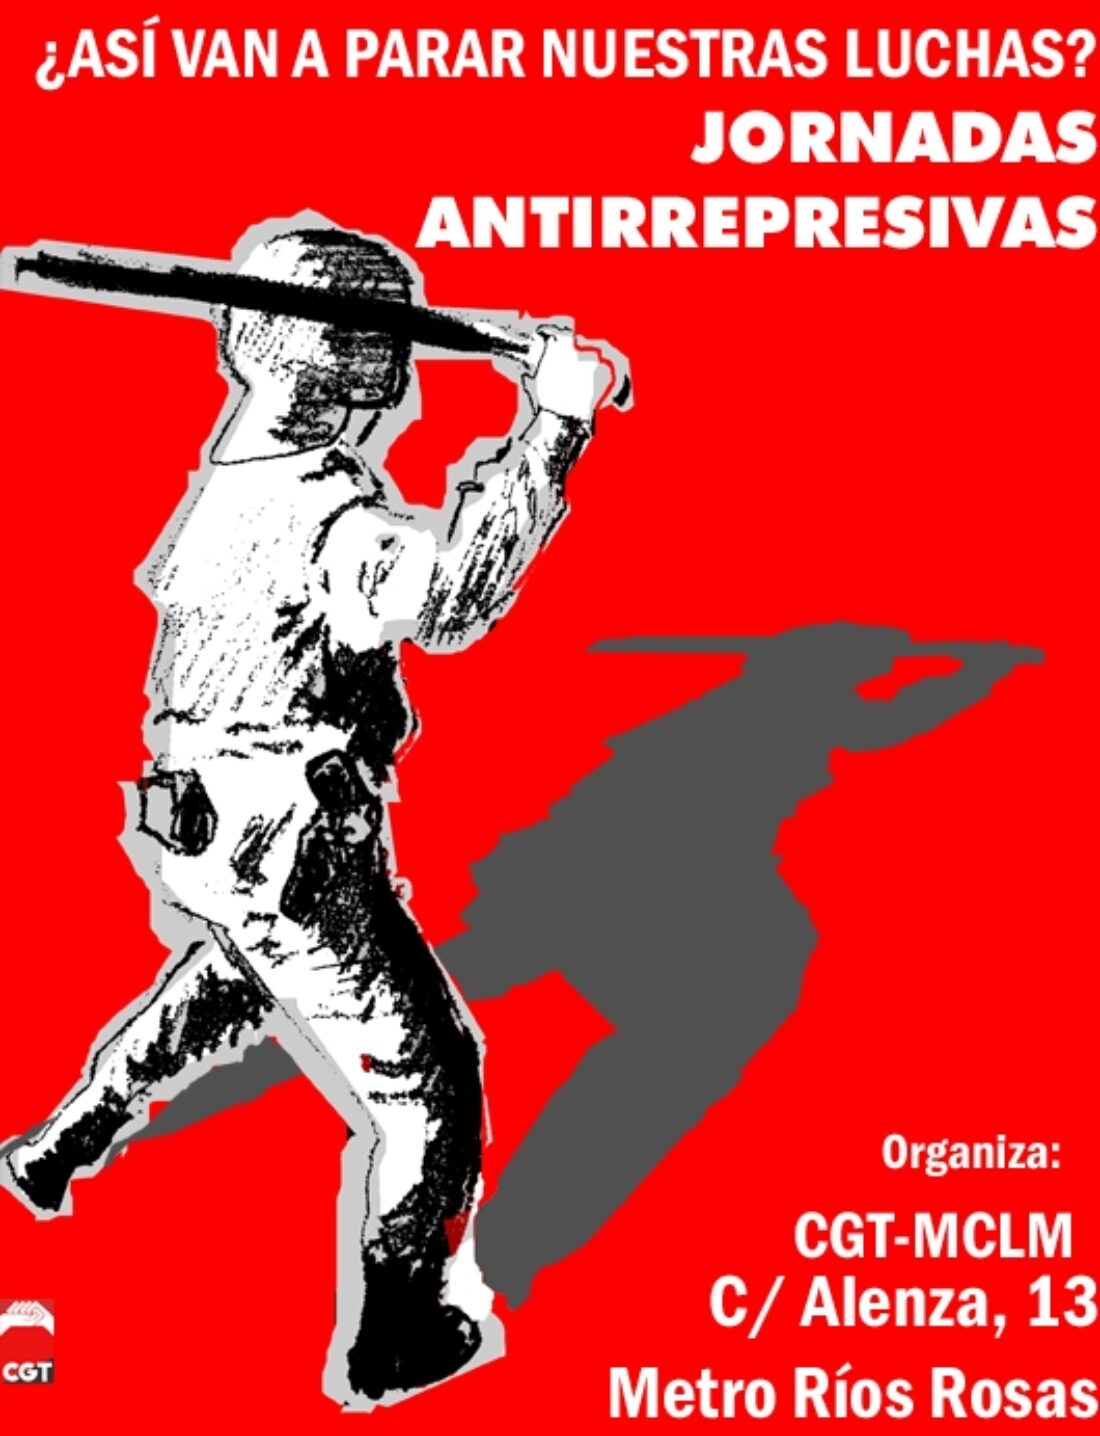 CGT Madrid-Castilla La Mancha : Encuentro Antirrepresivo